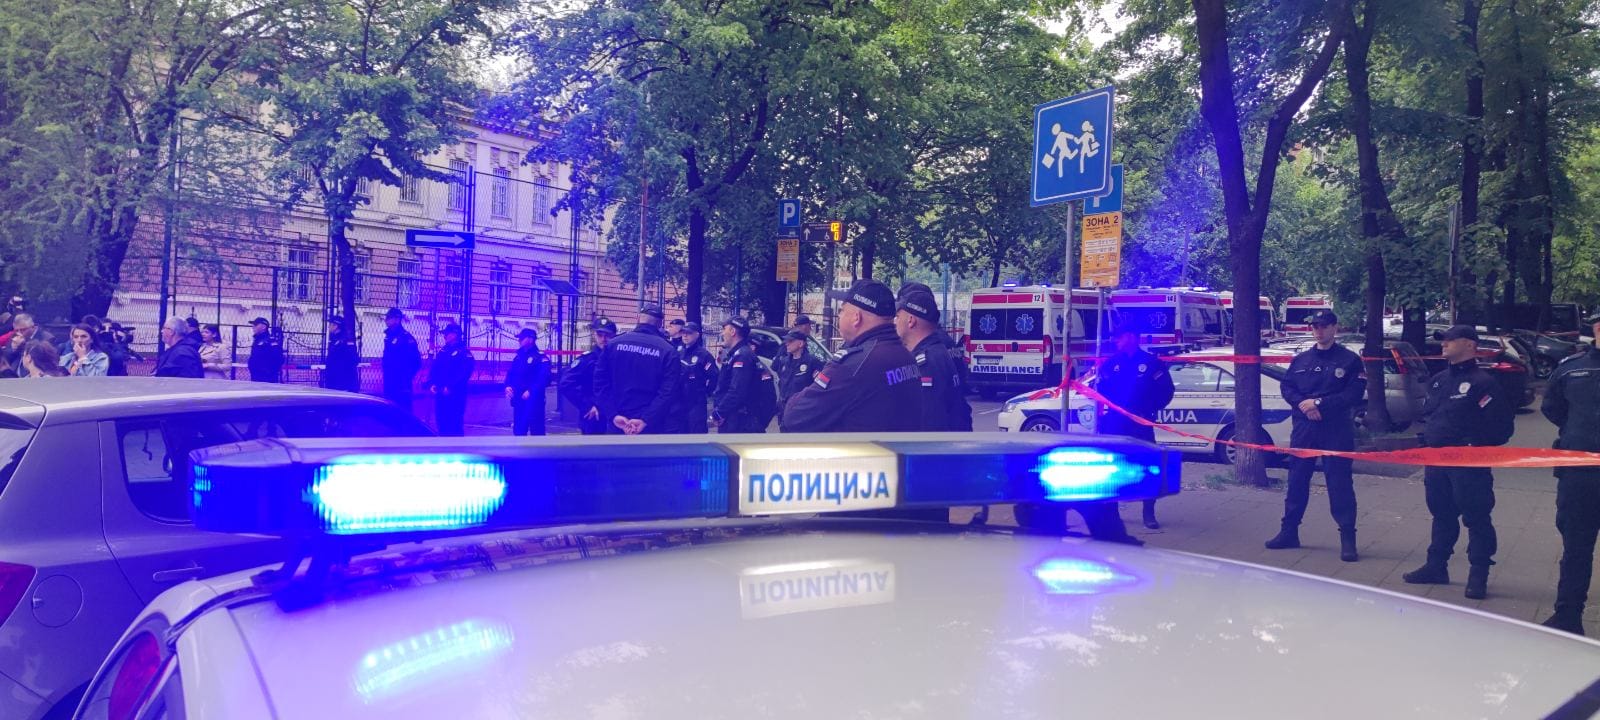 Policia serbe